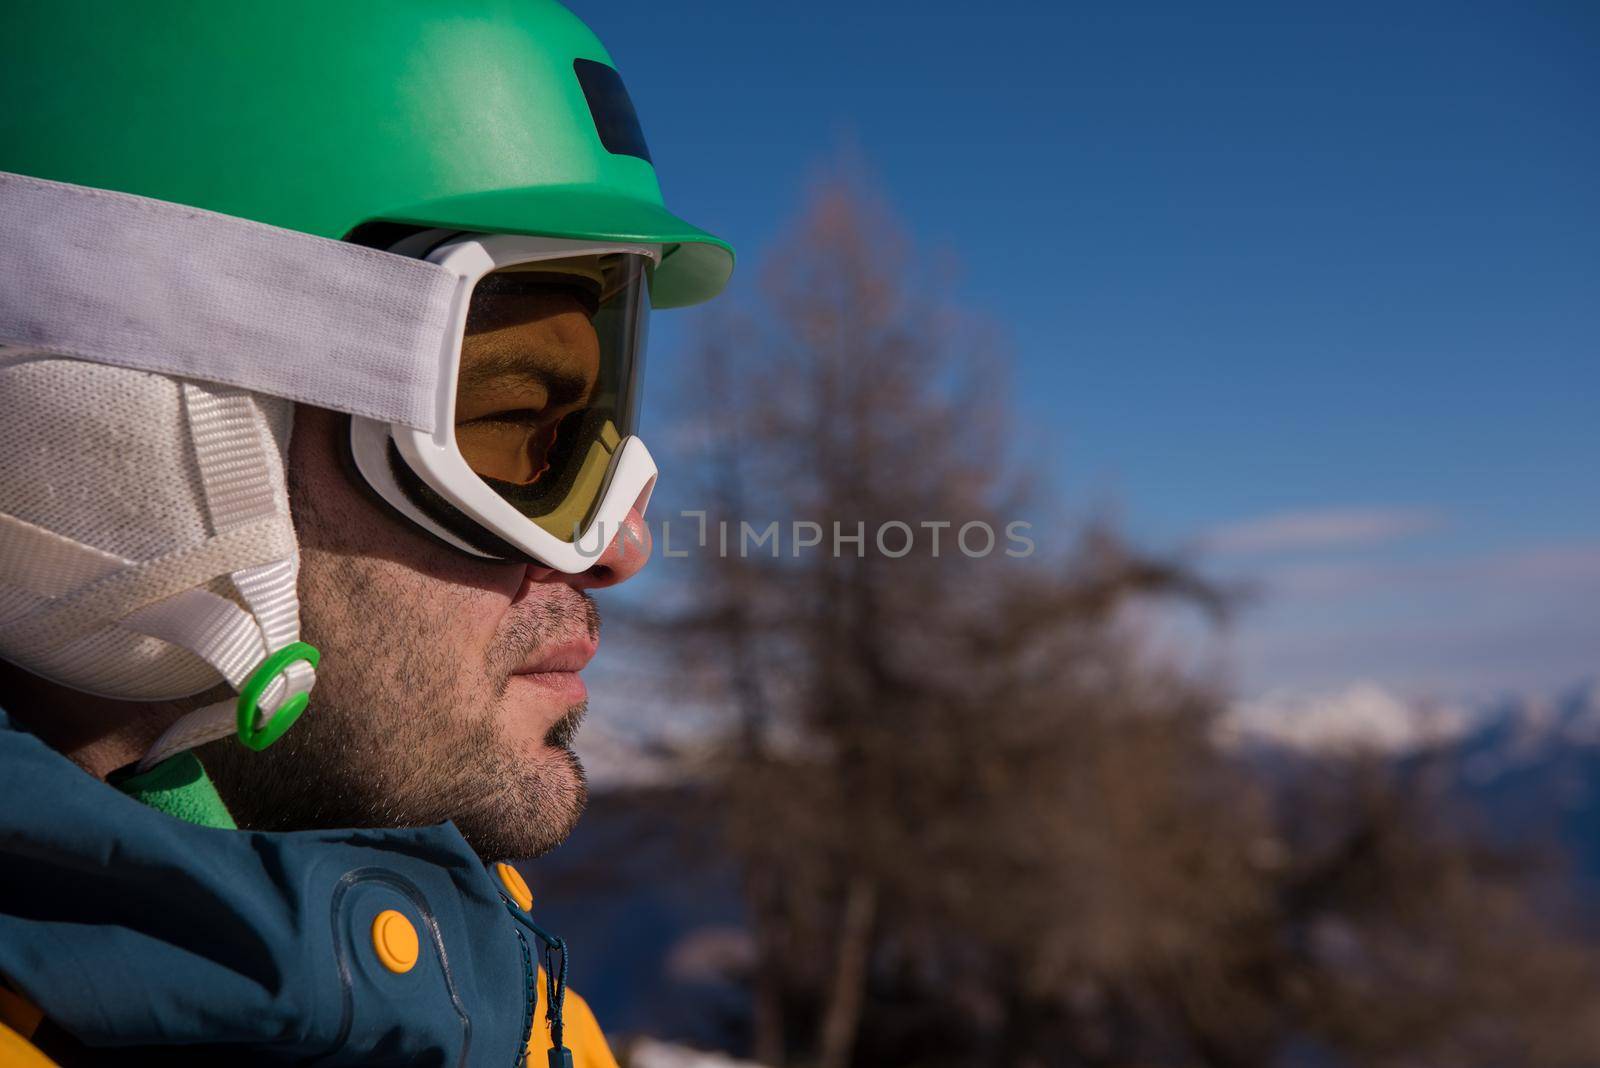 snowboarder portrait by dotshock